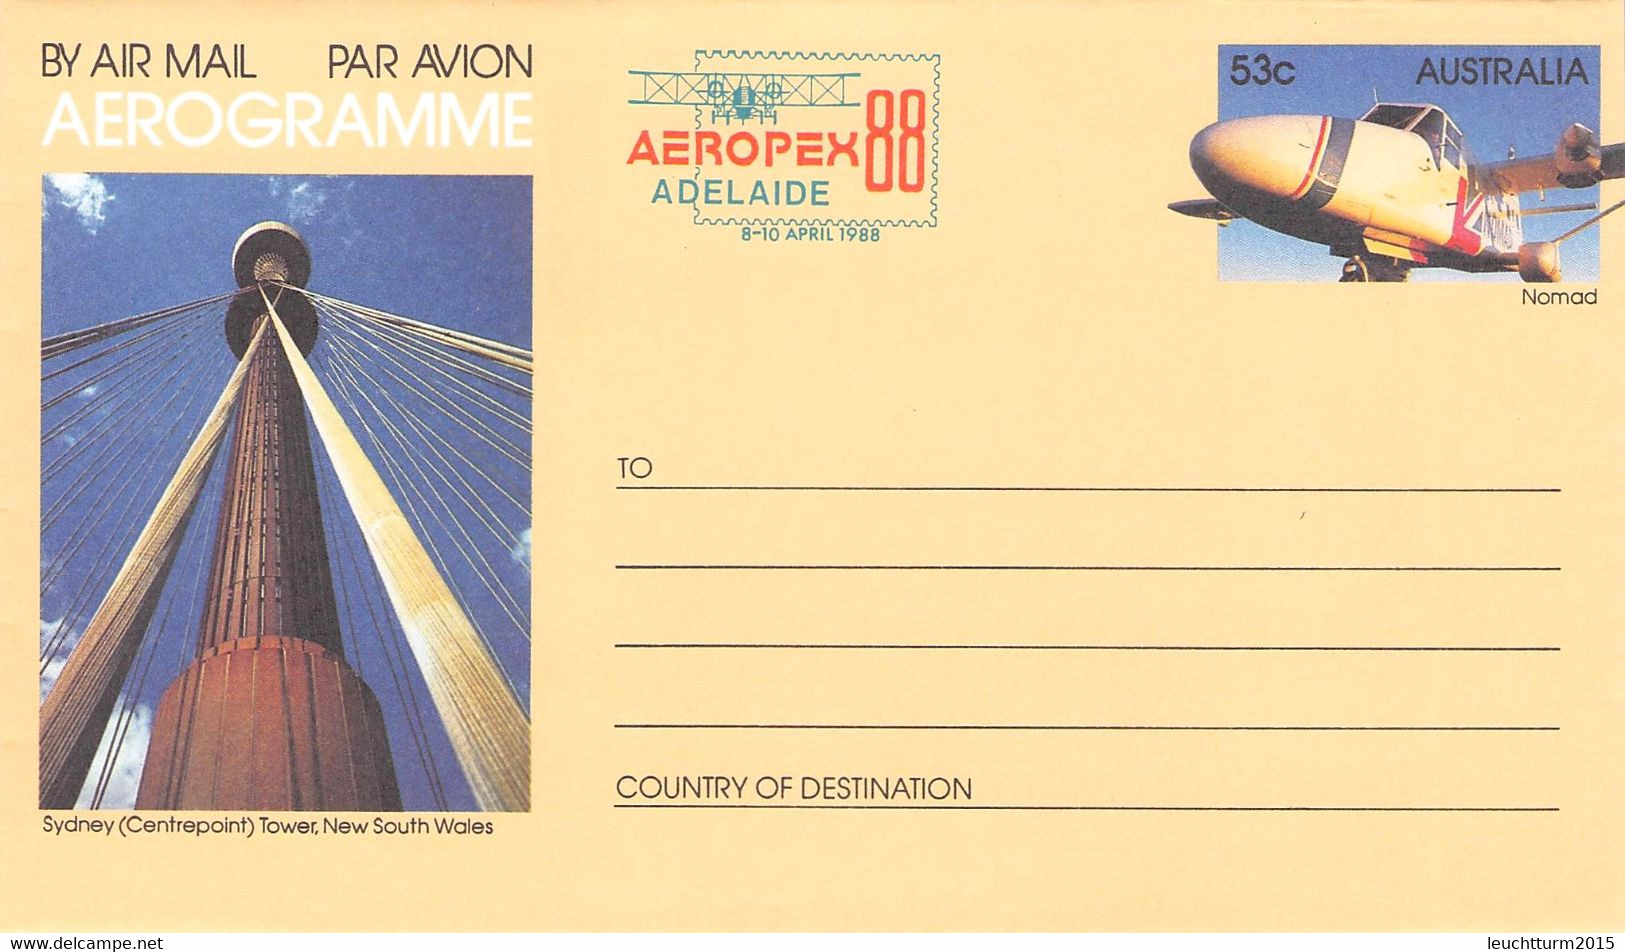 AUSTRALIA - SET AEROGRAMME 53c 1988 AEROPEX '88 MNH /QD103 - Aérogrammes